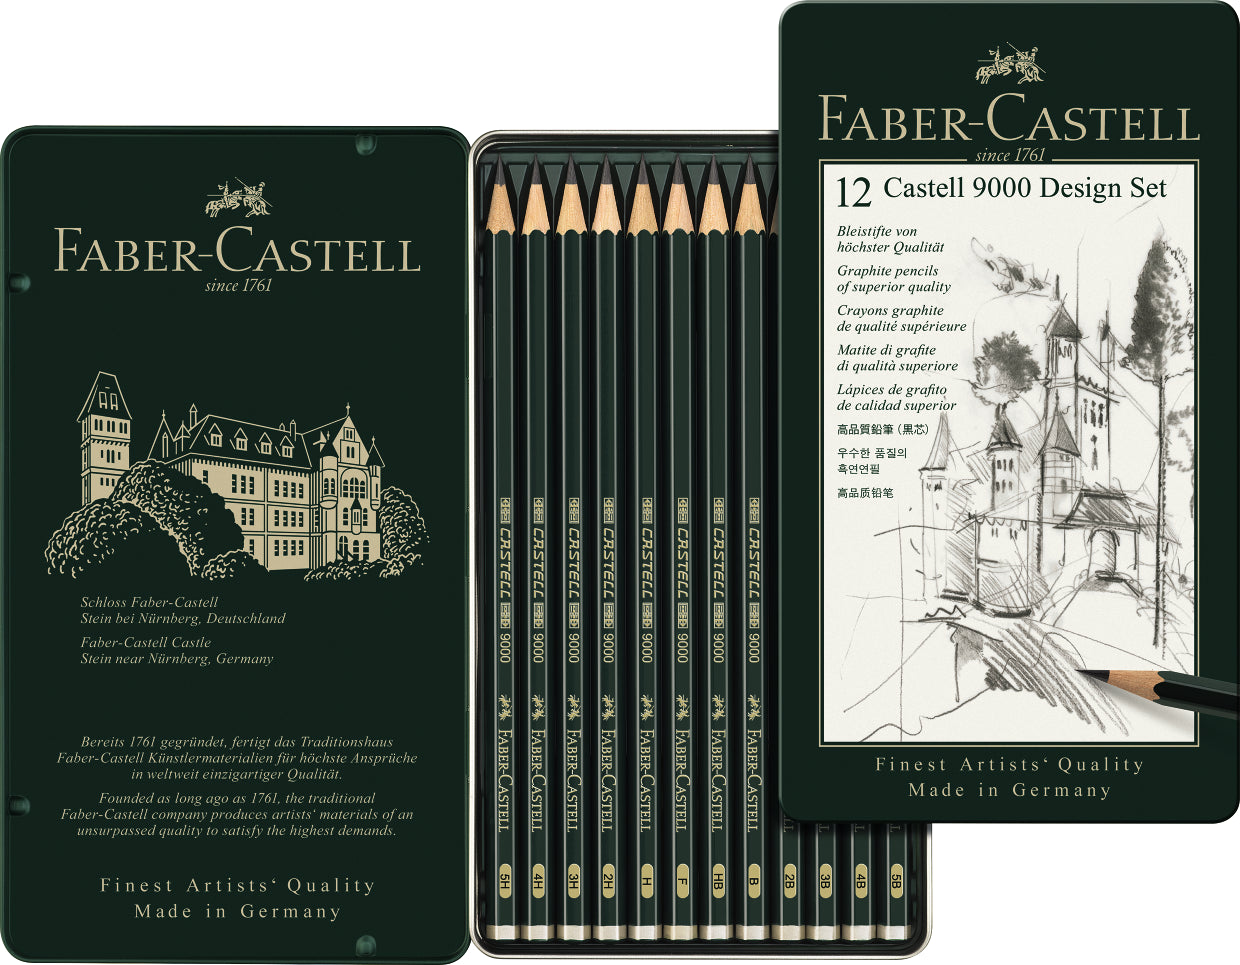 Crayon graphite aquarelle mine 3 3 mm 2b noir x 6 faber-castell - La Poste